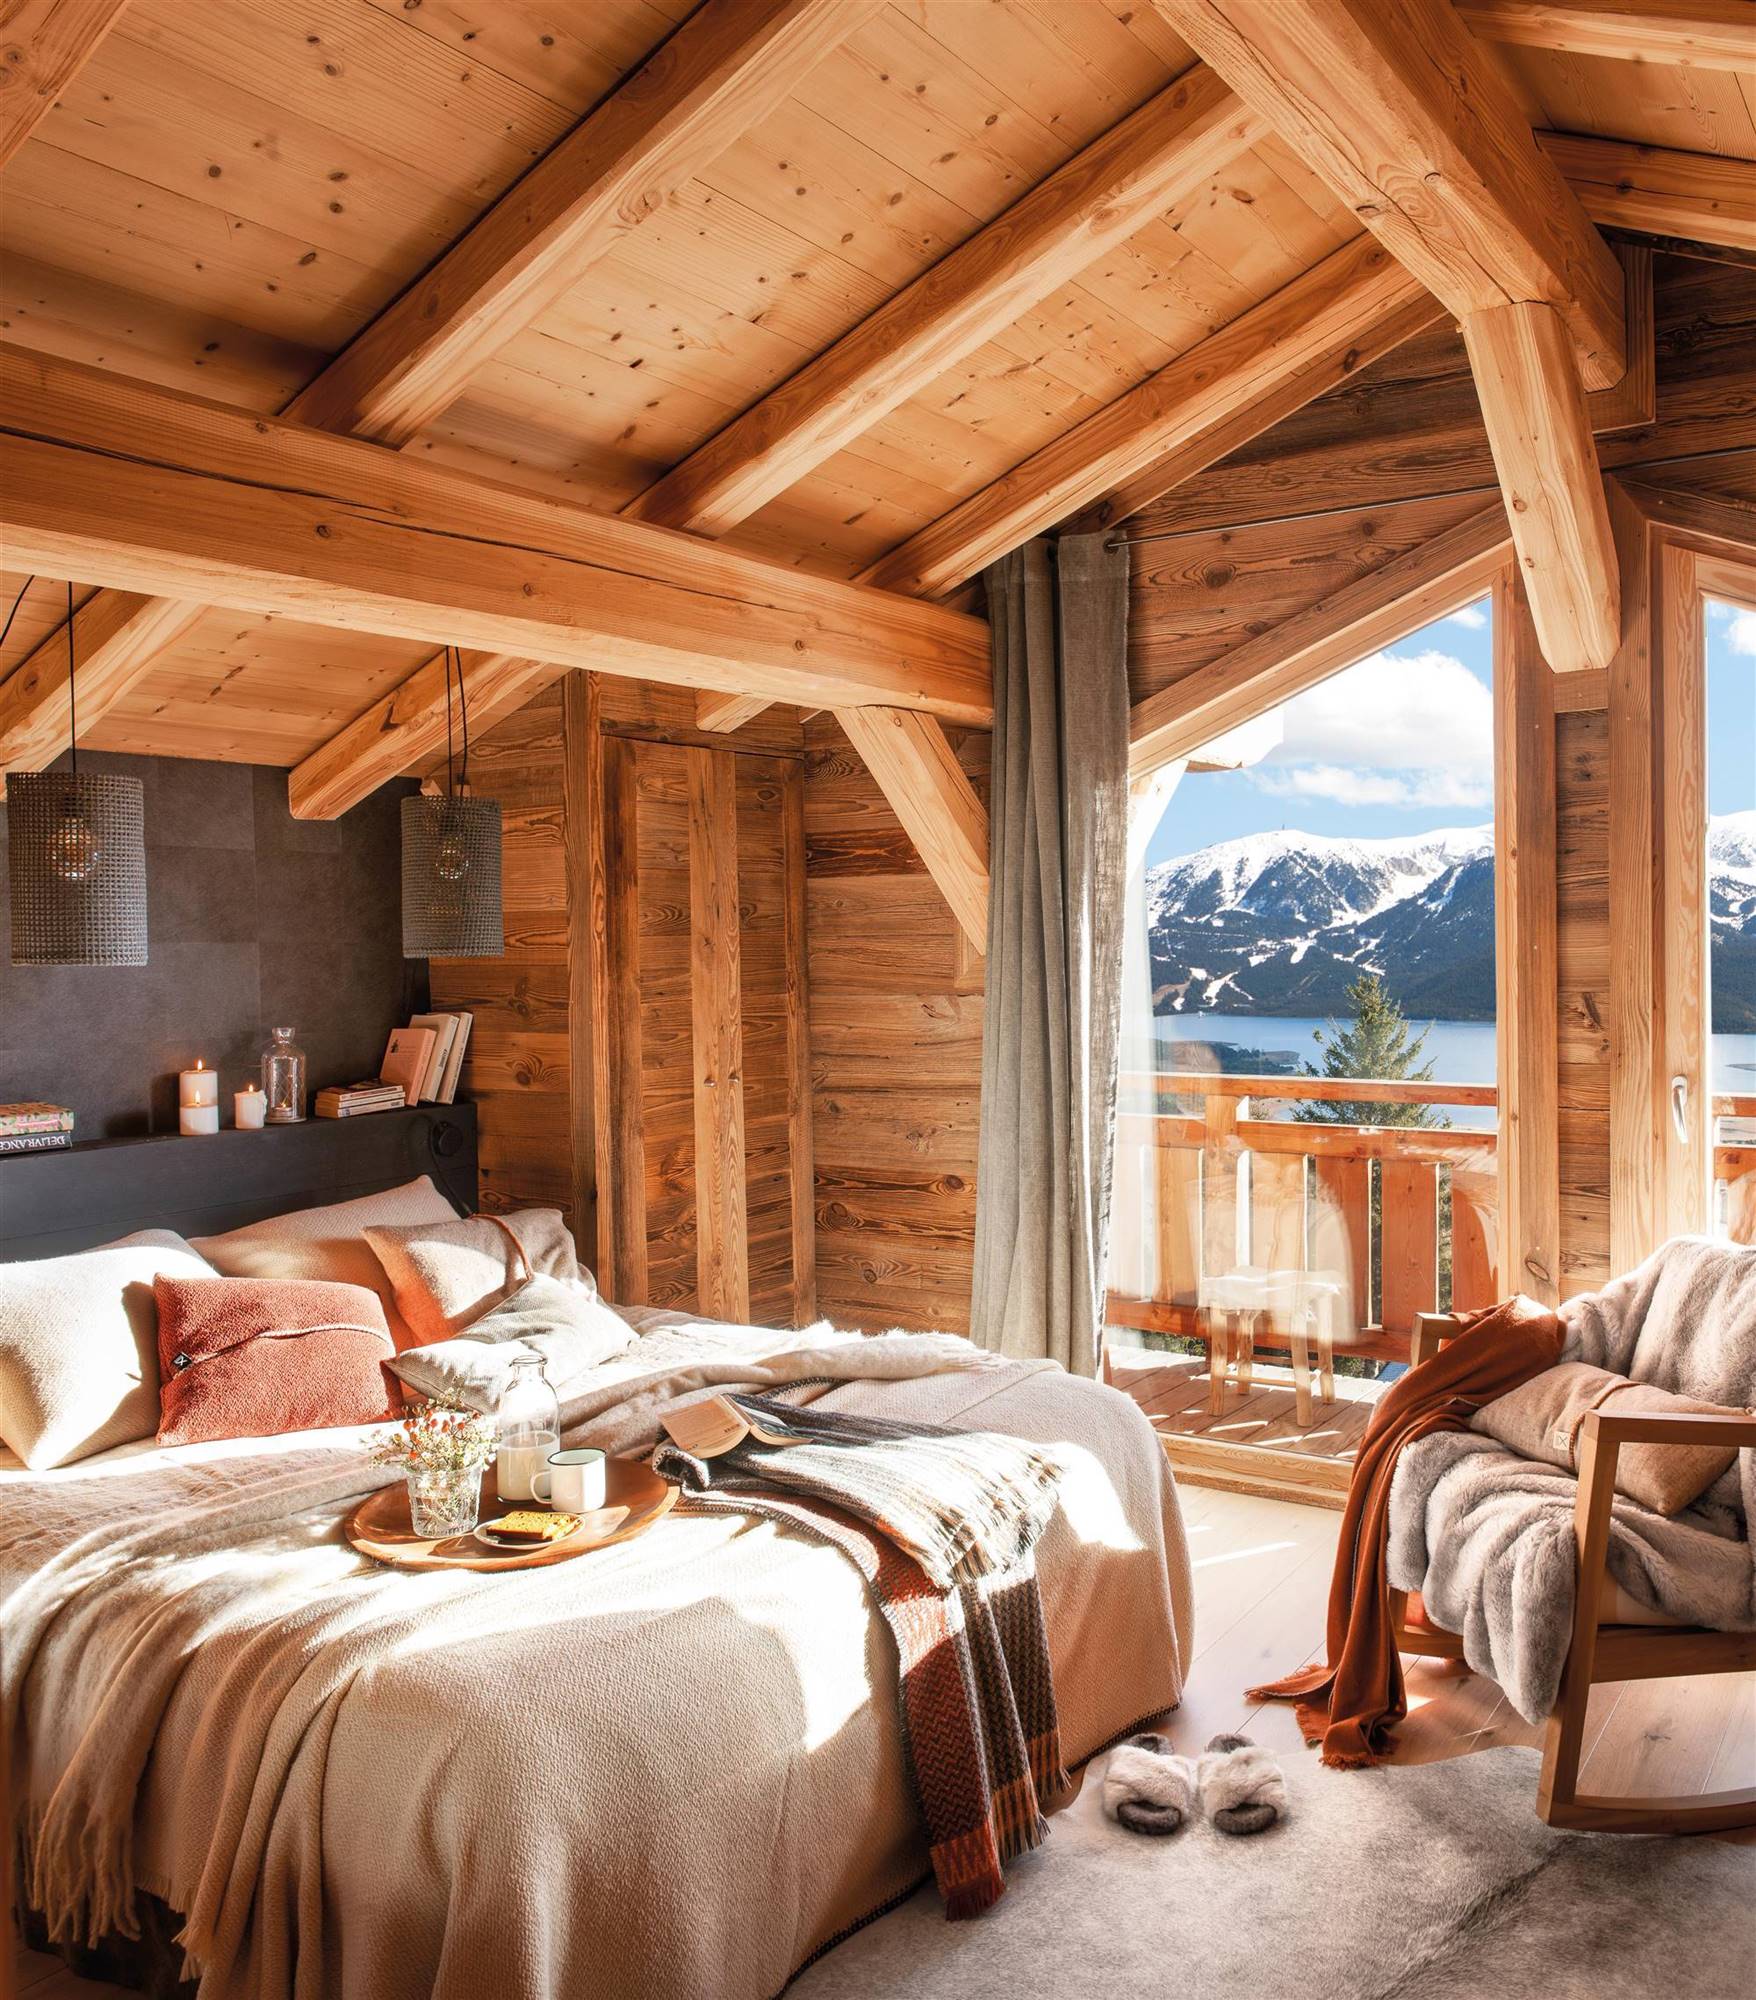 Dormitorio de invierno abuhardillado con madera y textiles.